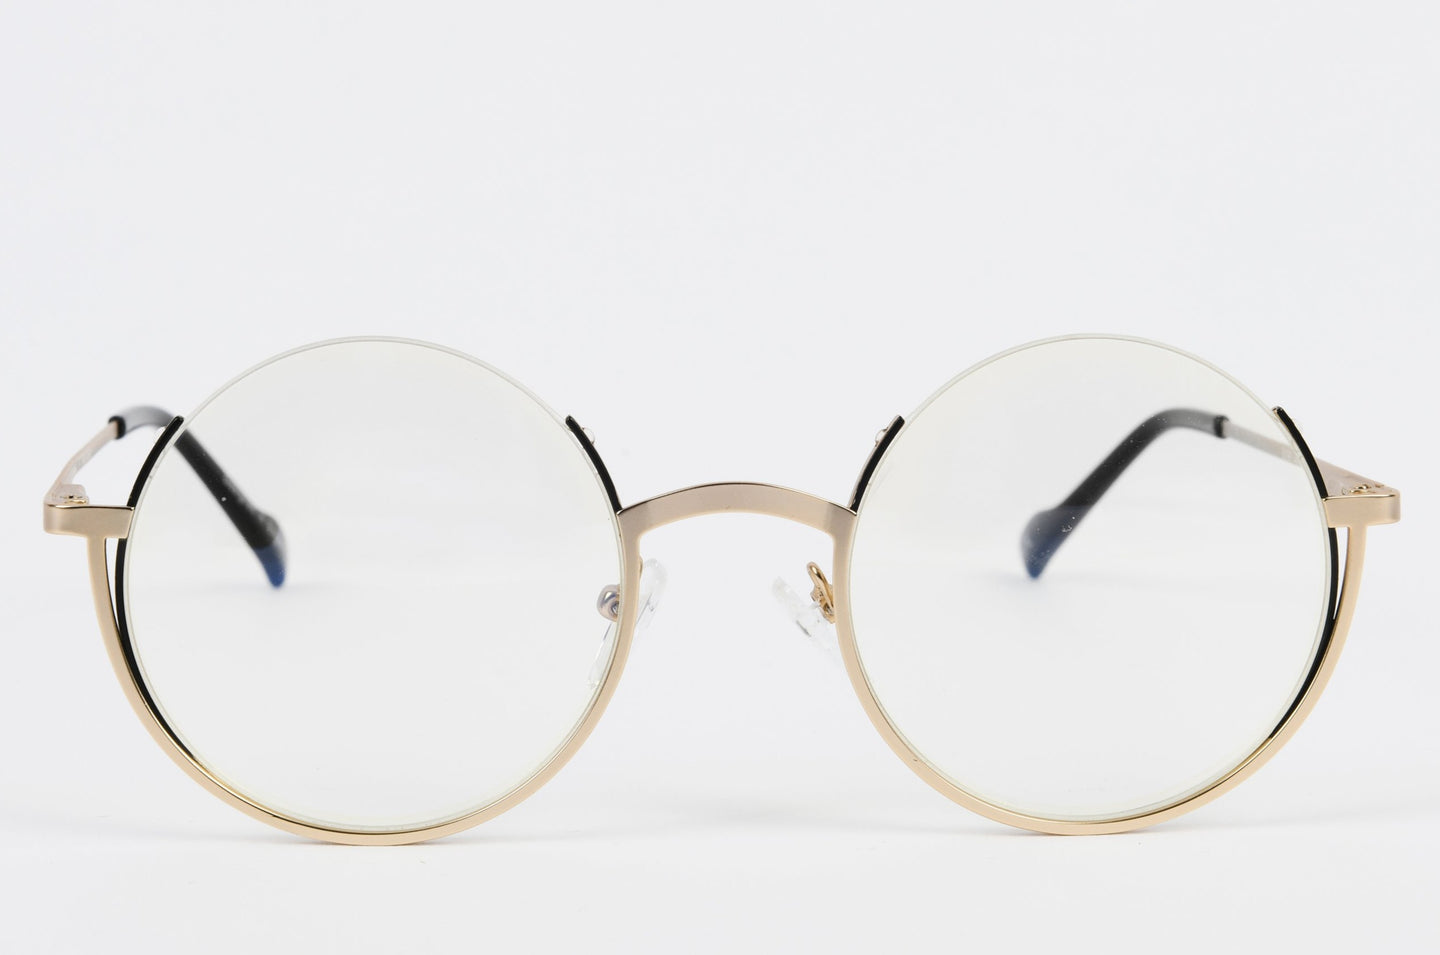 Round gold glasses frame with prescription lenses